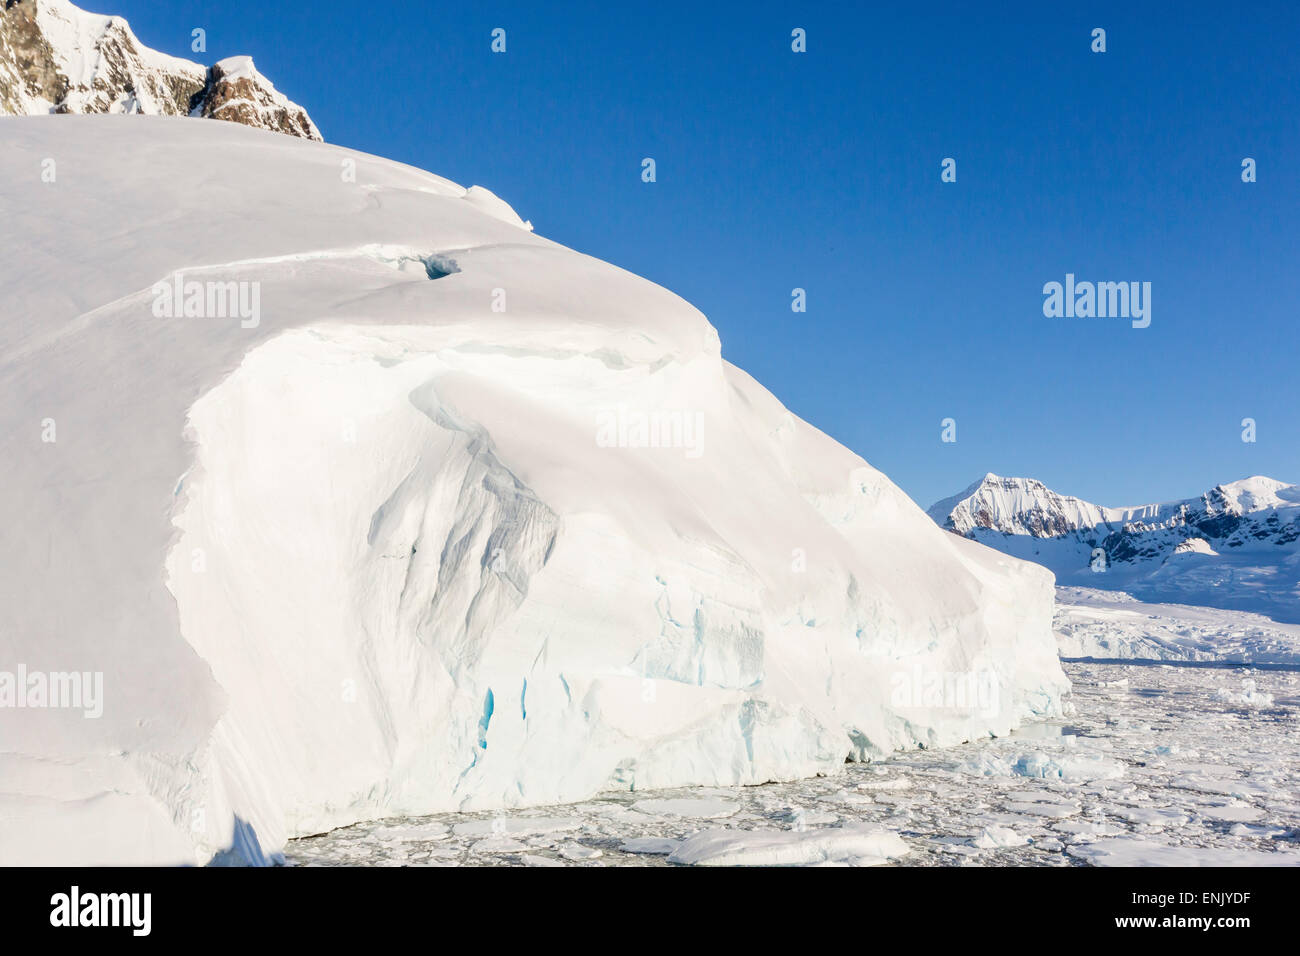 La ligne des montagnes neige-couvertes dans les glaces du détroit de Penola, Antarctique, les régions polaires Banque D'Images